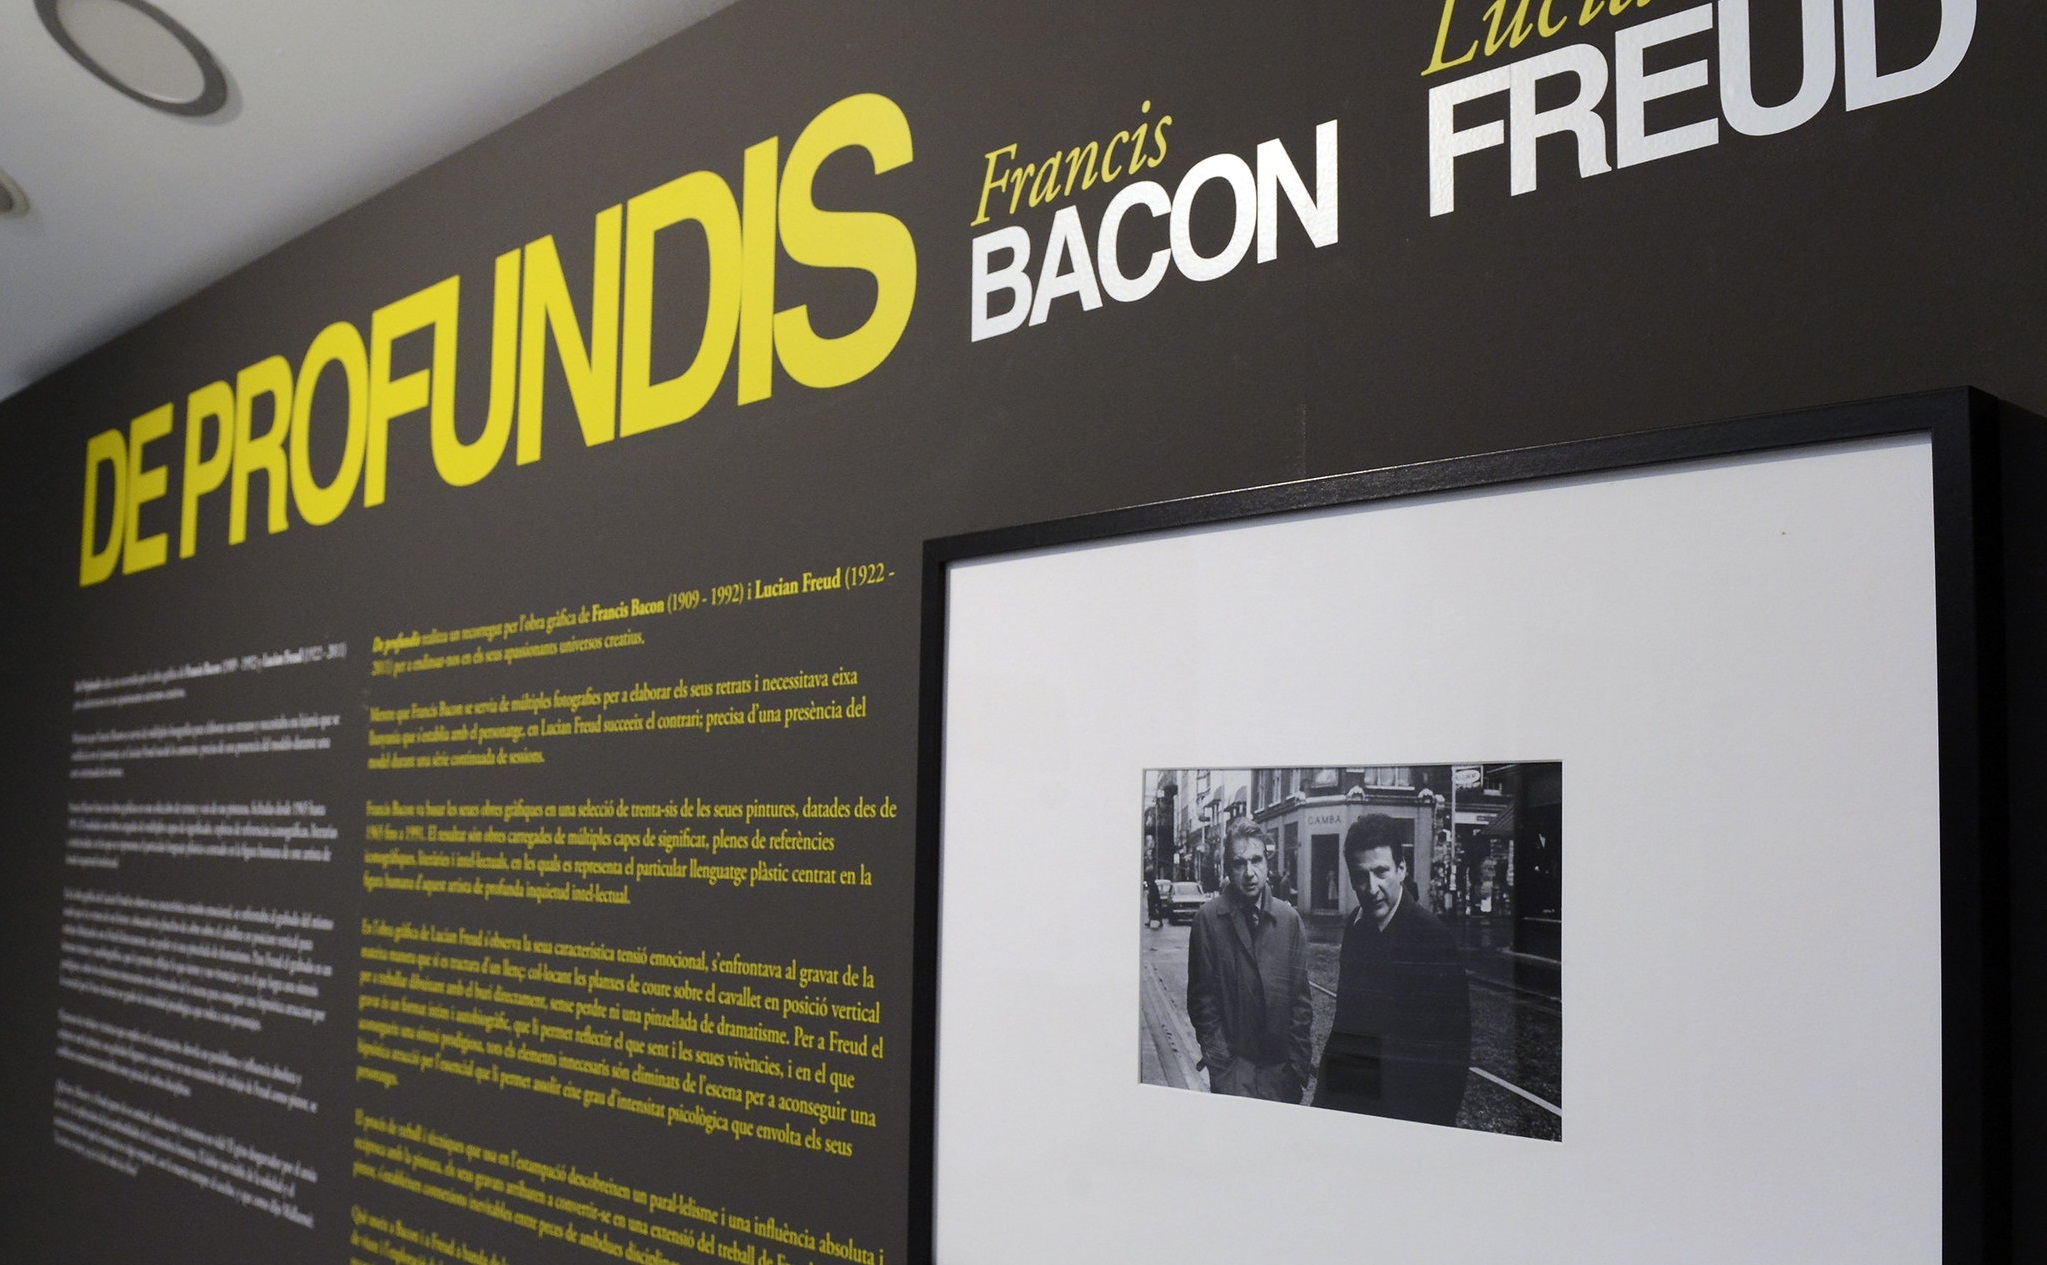 La exposición 'Francis Bacon - Lucian Freud. De profundis' ofrece un recorrido por la obra gráfica de ambos artistas y pone el foco en qué actitud y qué temas dedicaron cada uno de ellos a esta faceta de su producción artística.